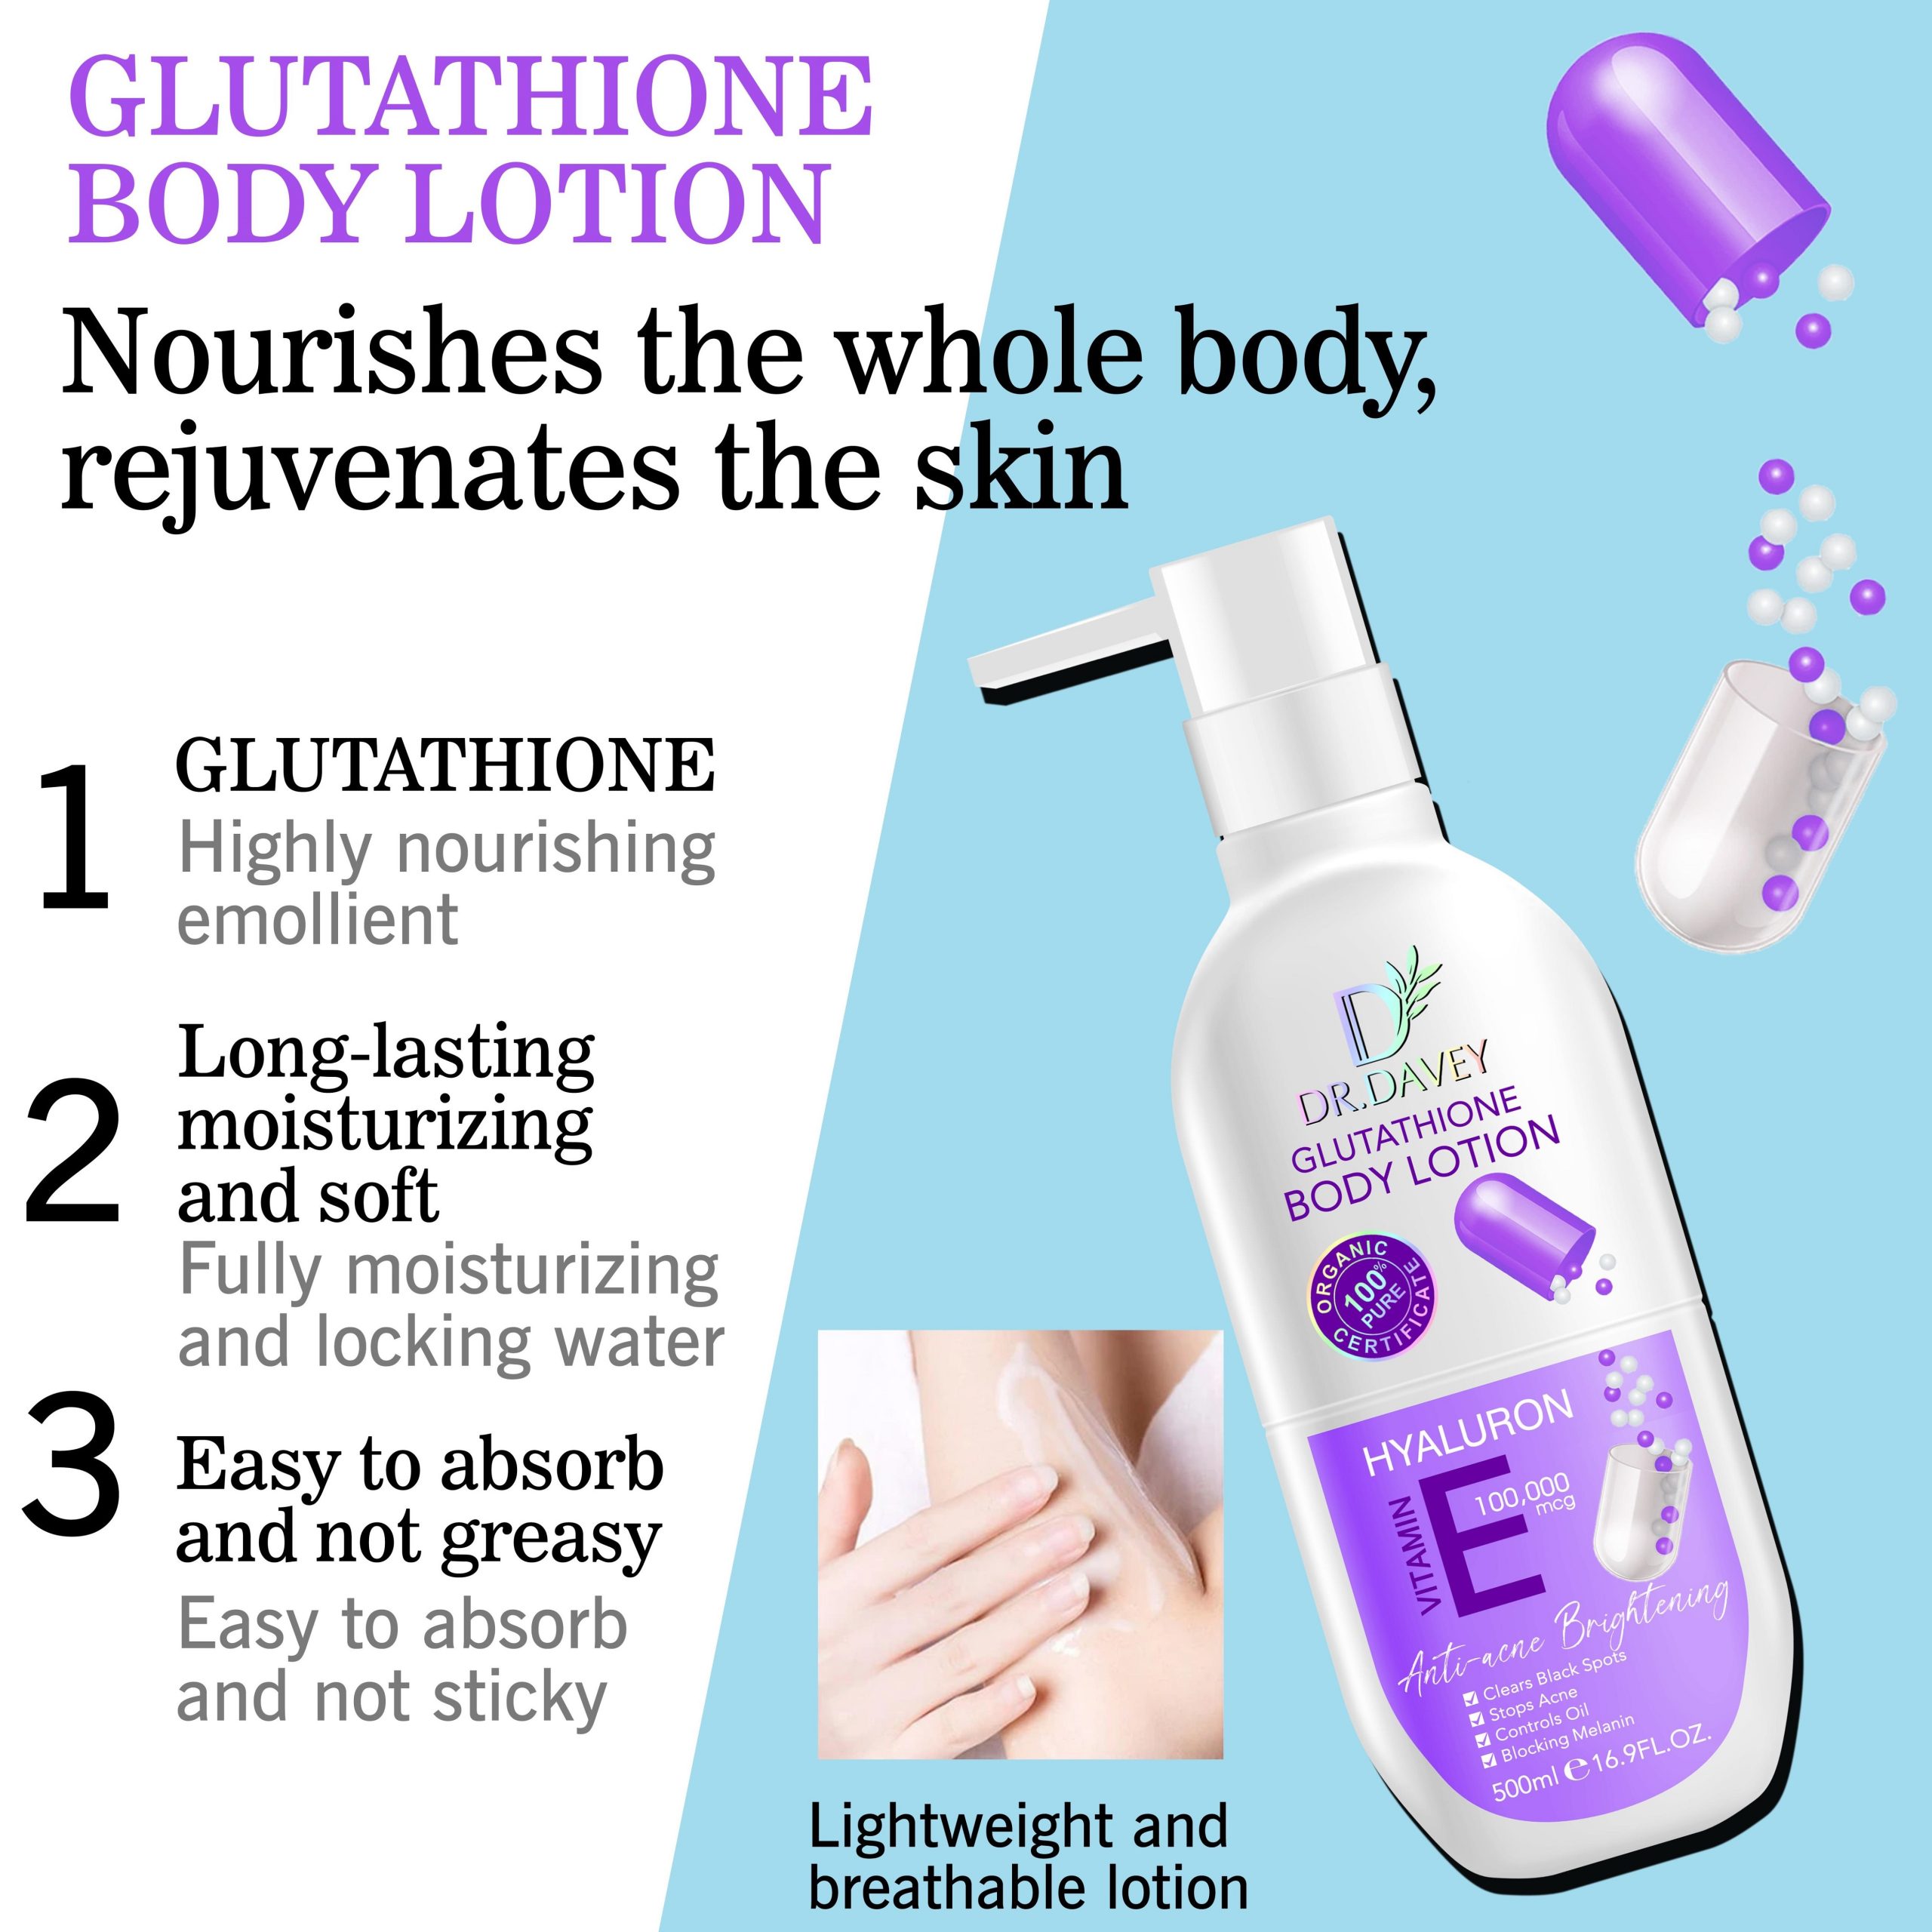 Glutathione Vitamin E body lotion